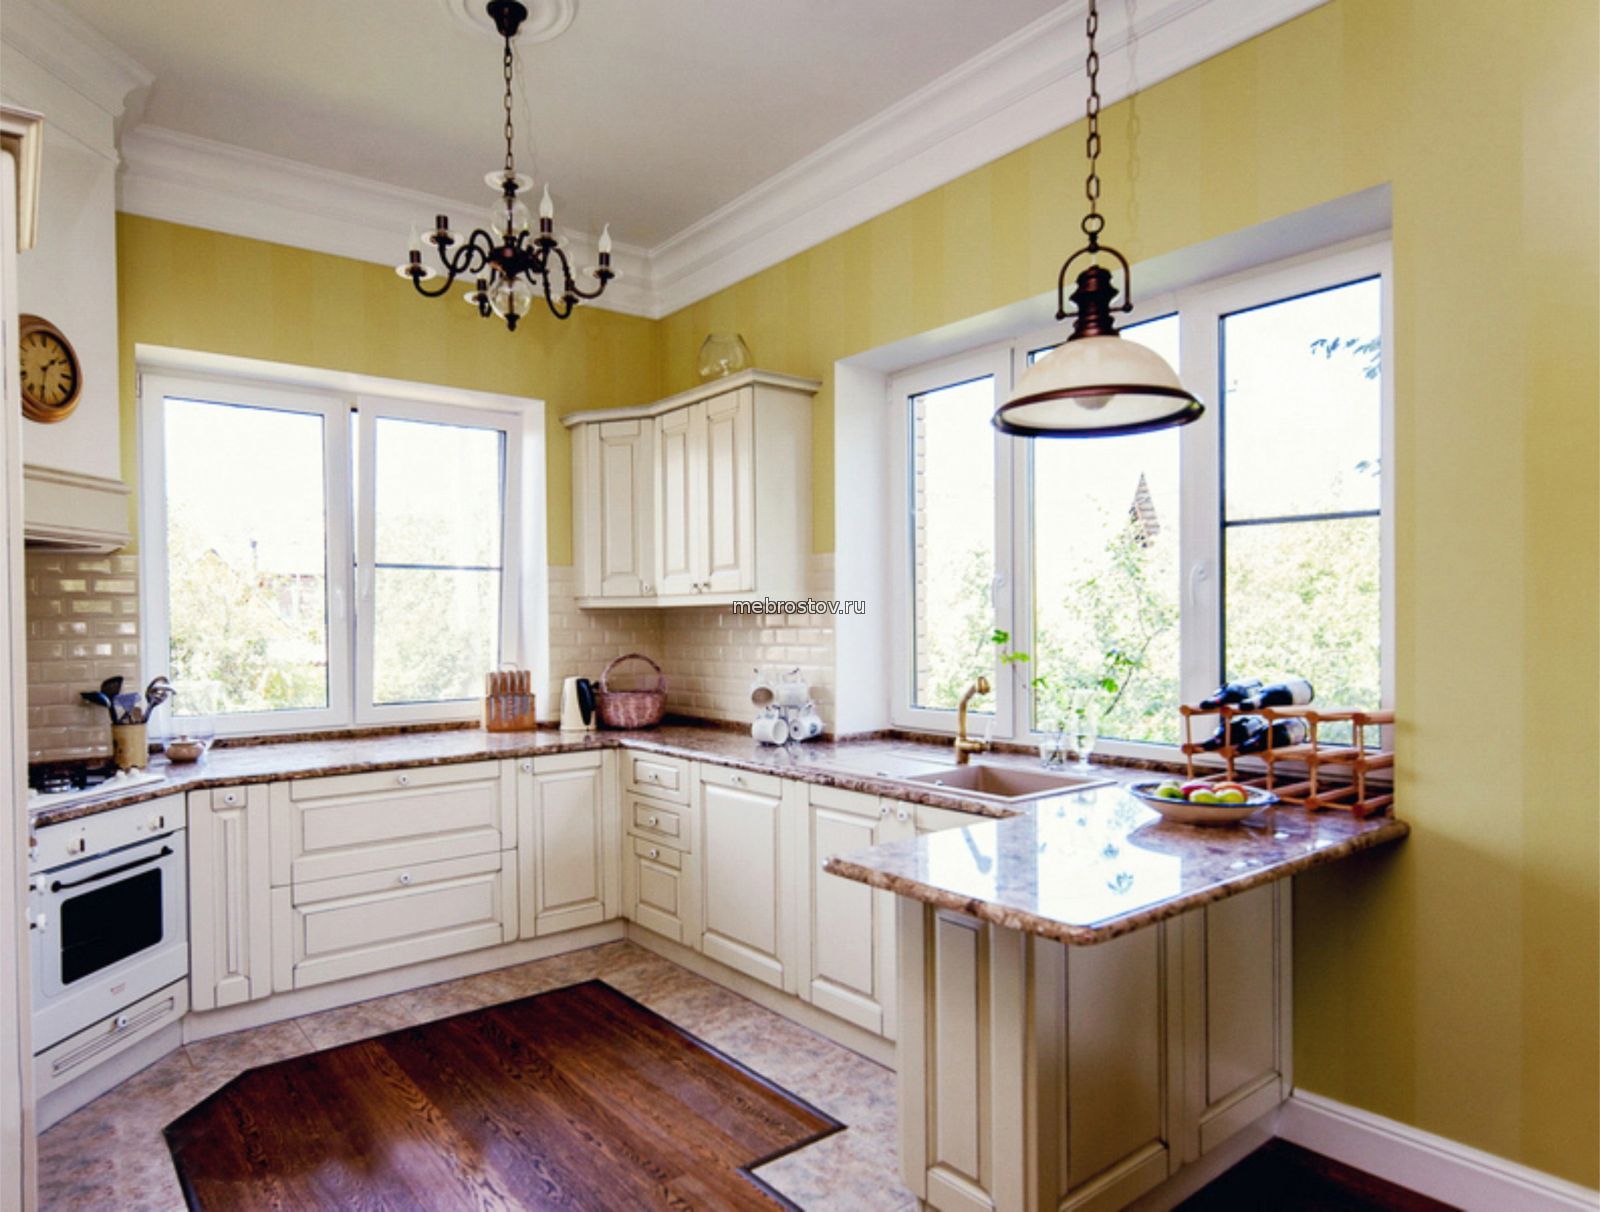 Дизайн кухни в частном доме с двумя окнами » Современный дизайн на Vip .